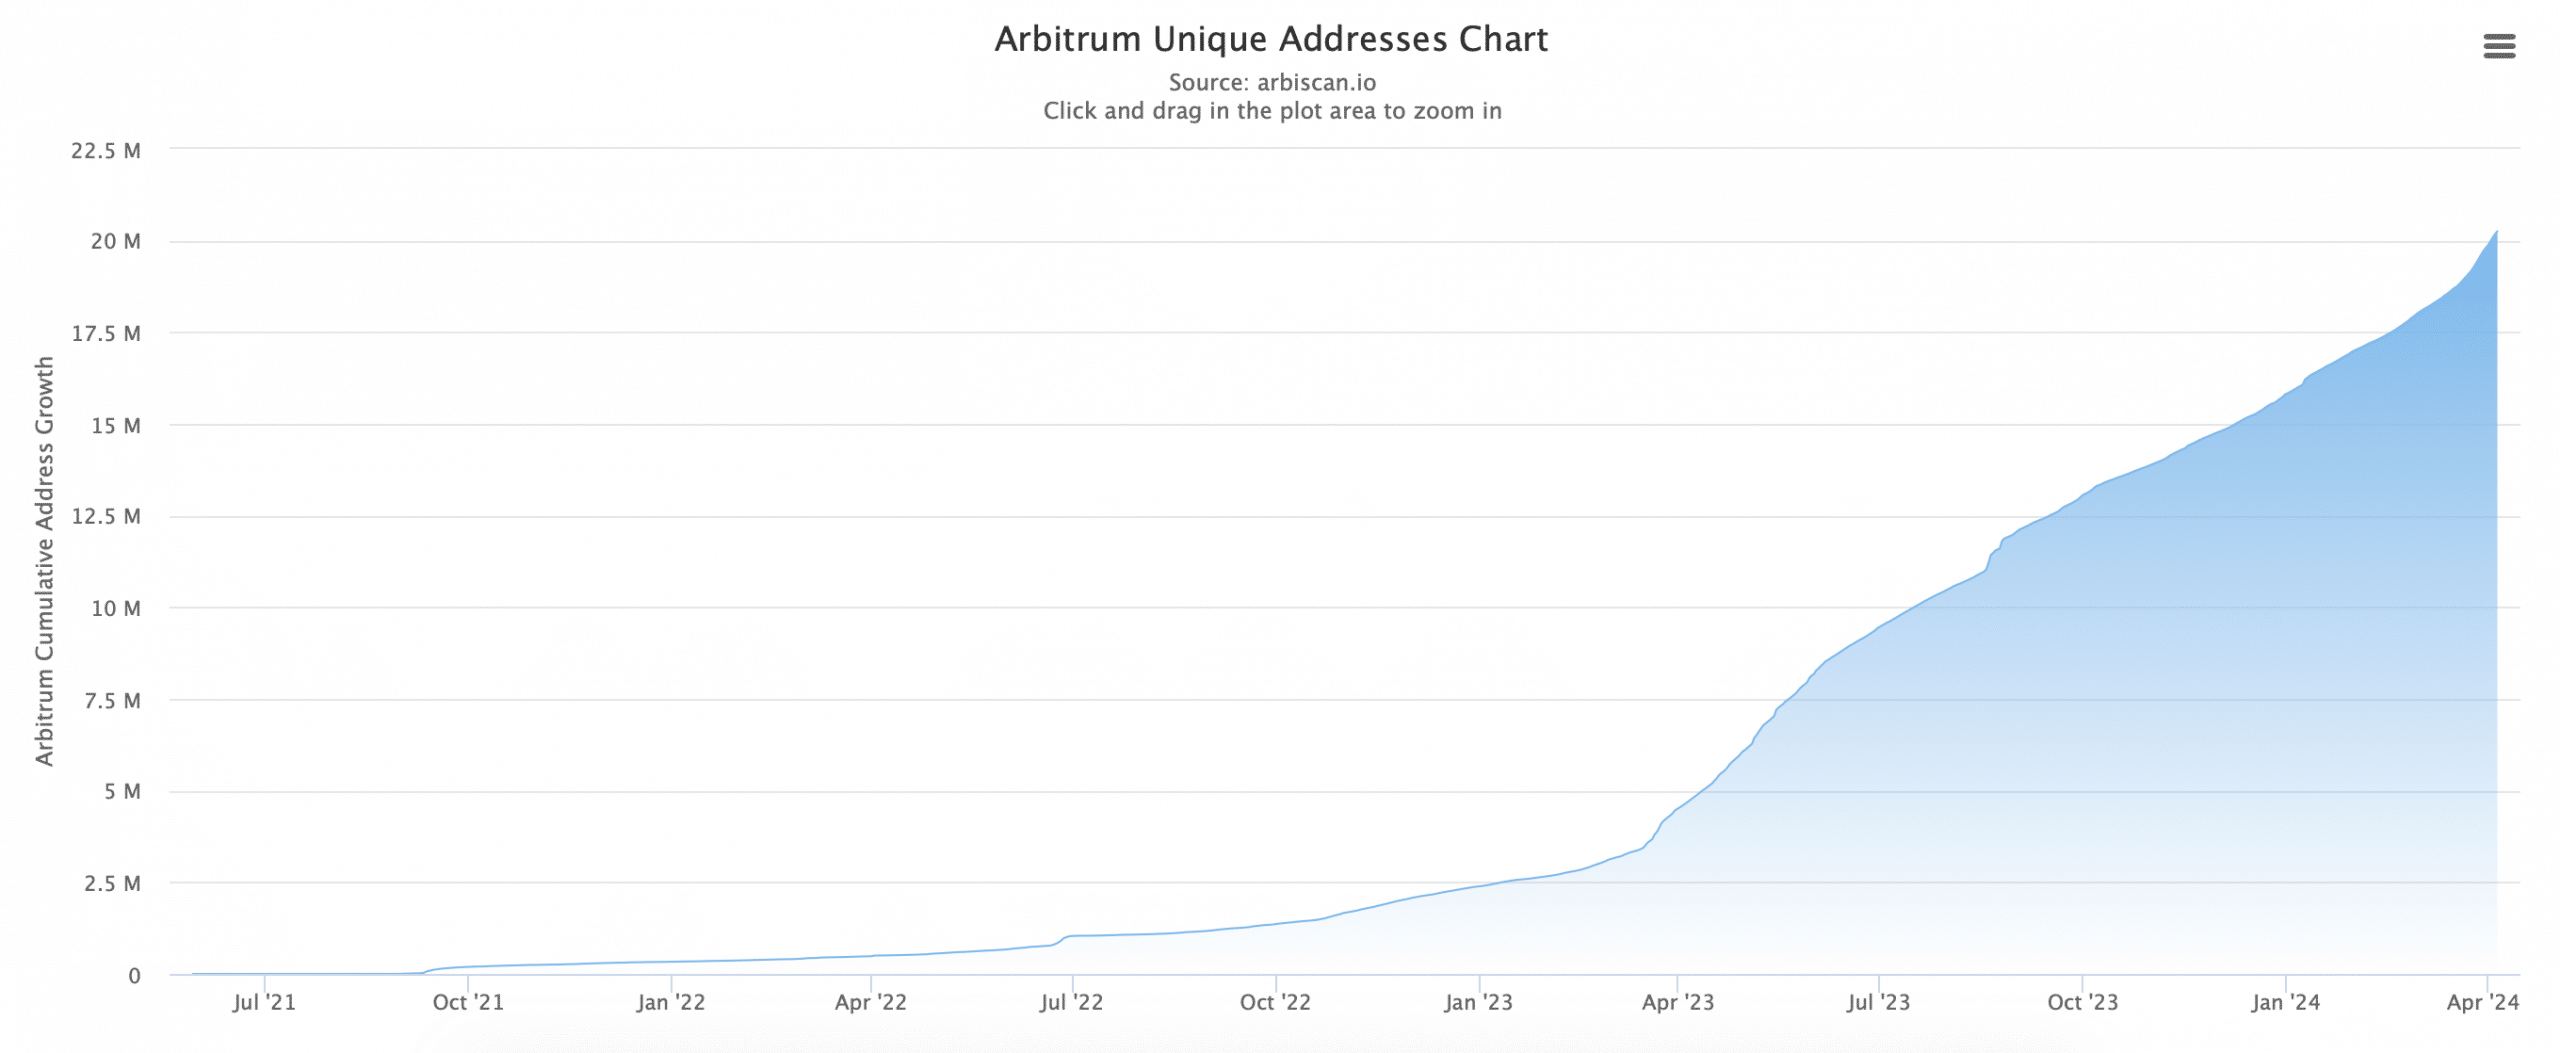 Arbitrum's unique adresses increased